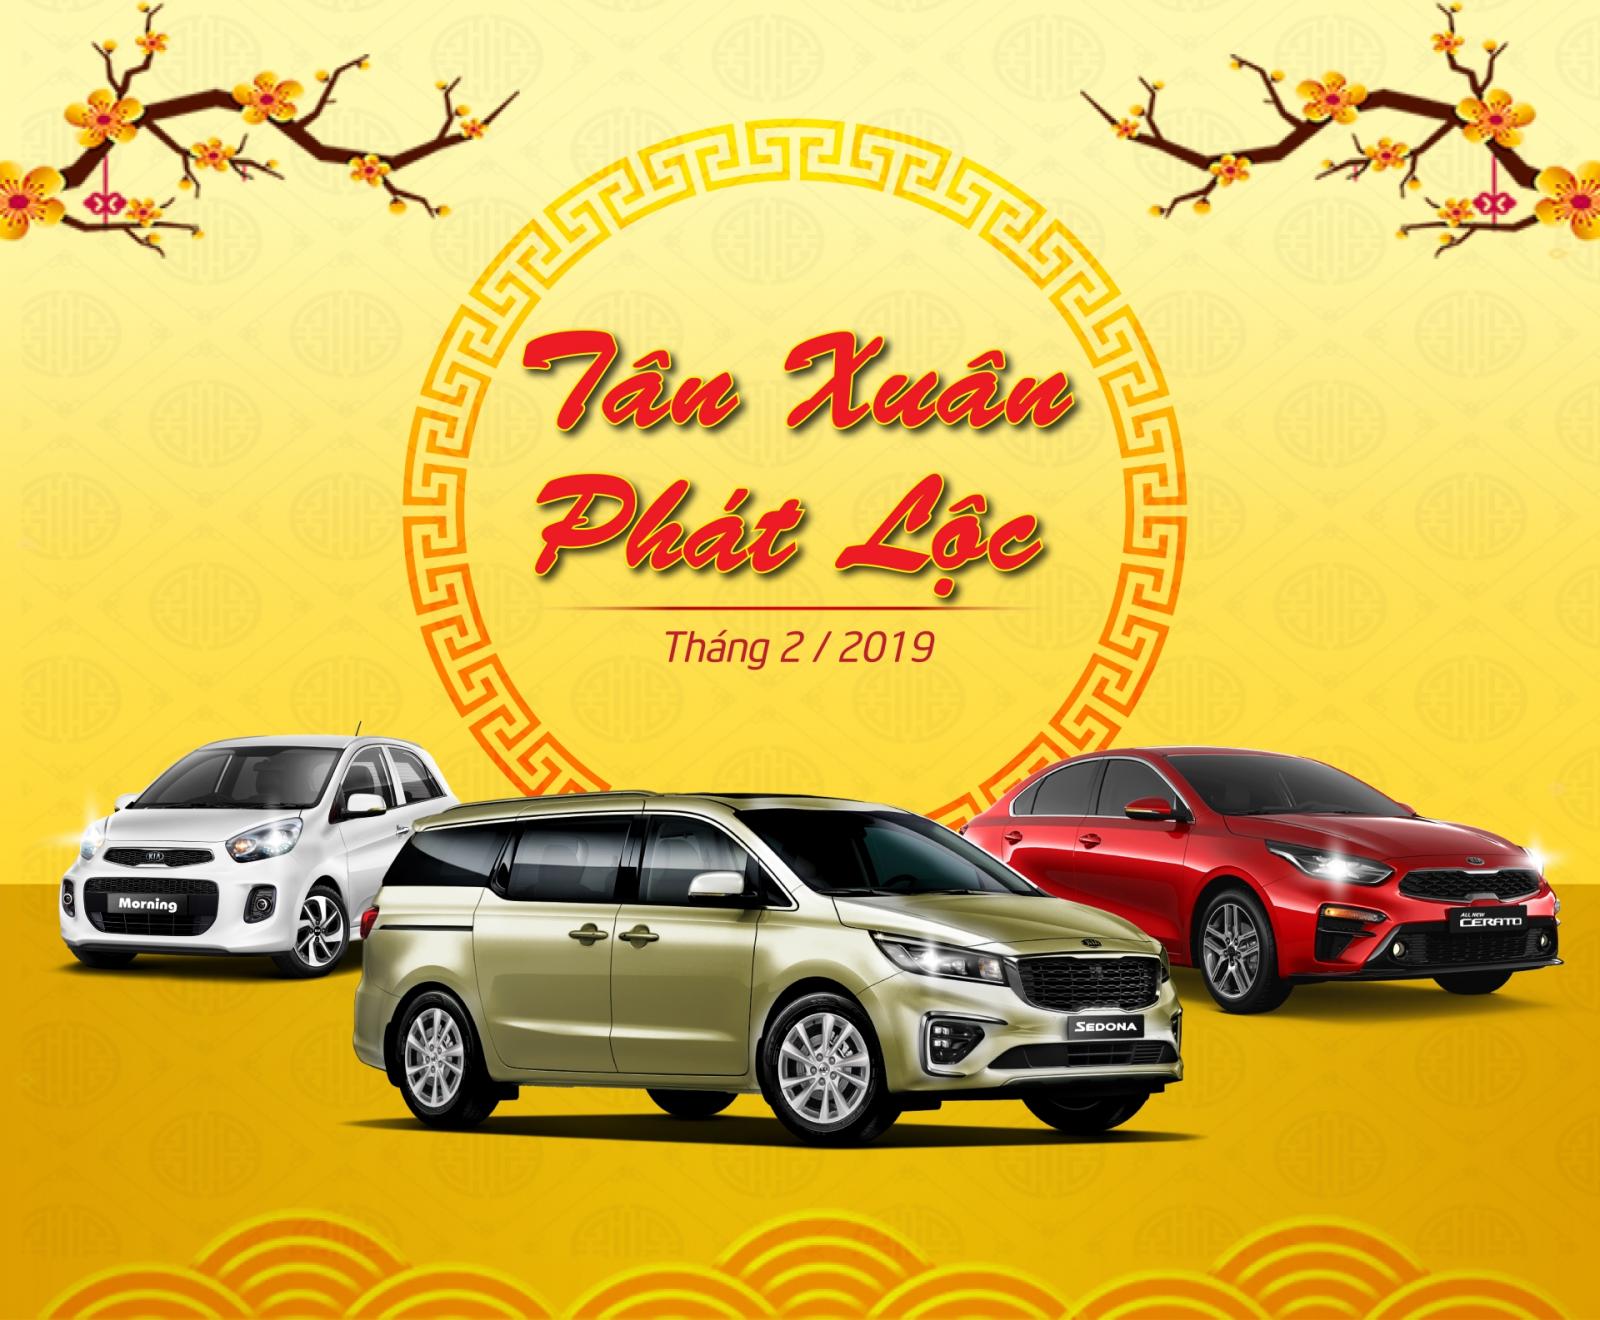 Chào năm mới, Kia Việt Nam khuyến mại cho khách hàng mua xe trong tháng 2/2019 a1